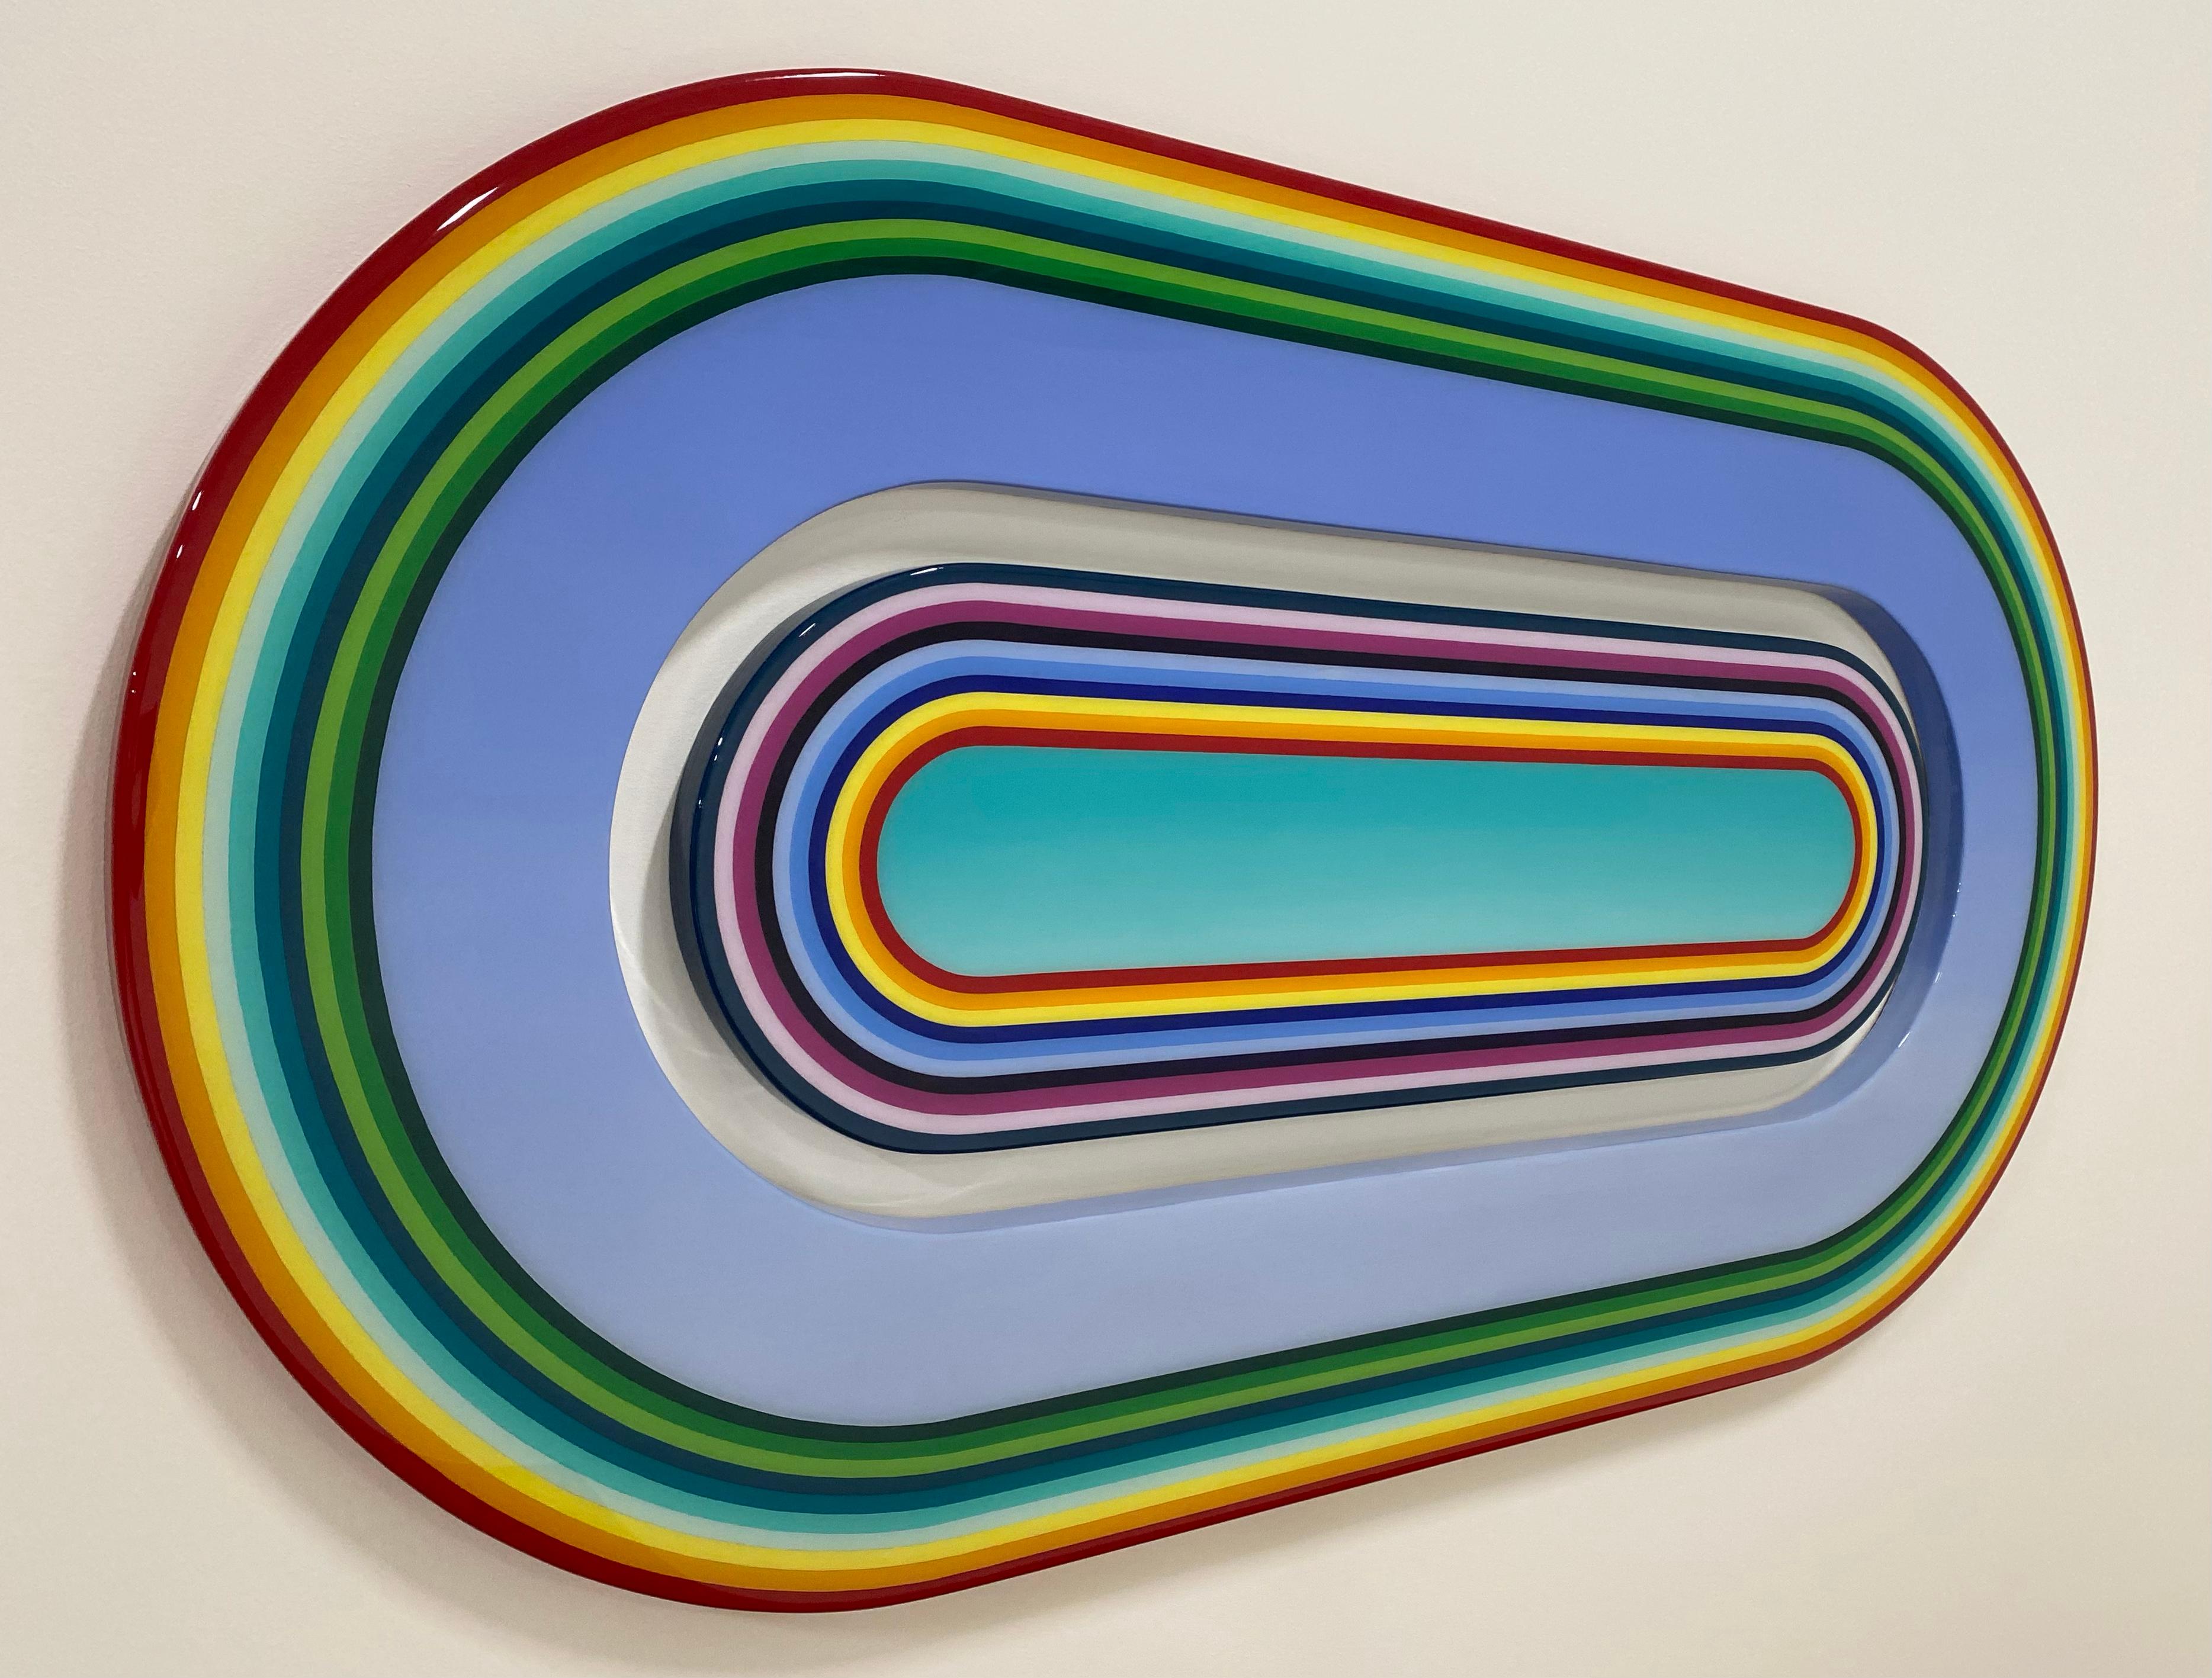 Pillscape - Pop Art Painting by Mark Knoerzer